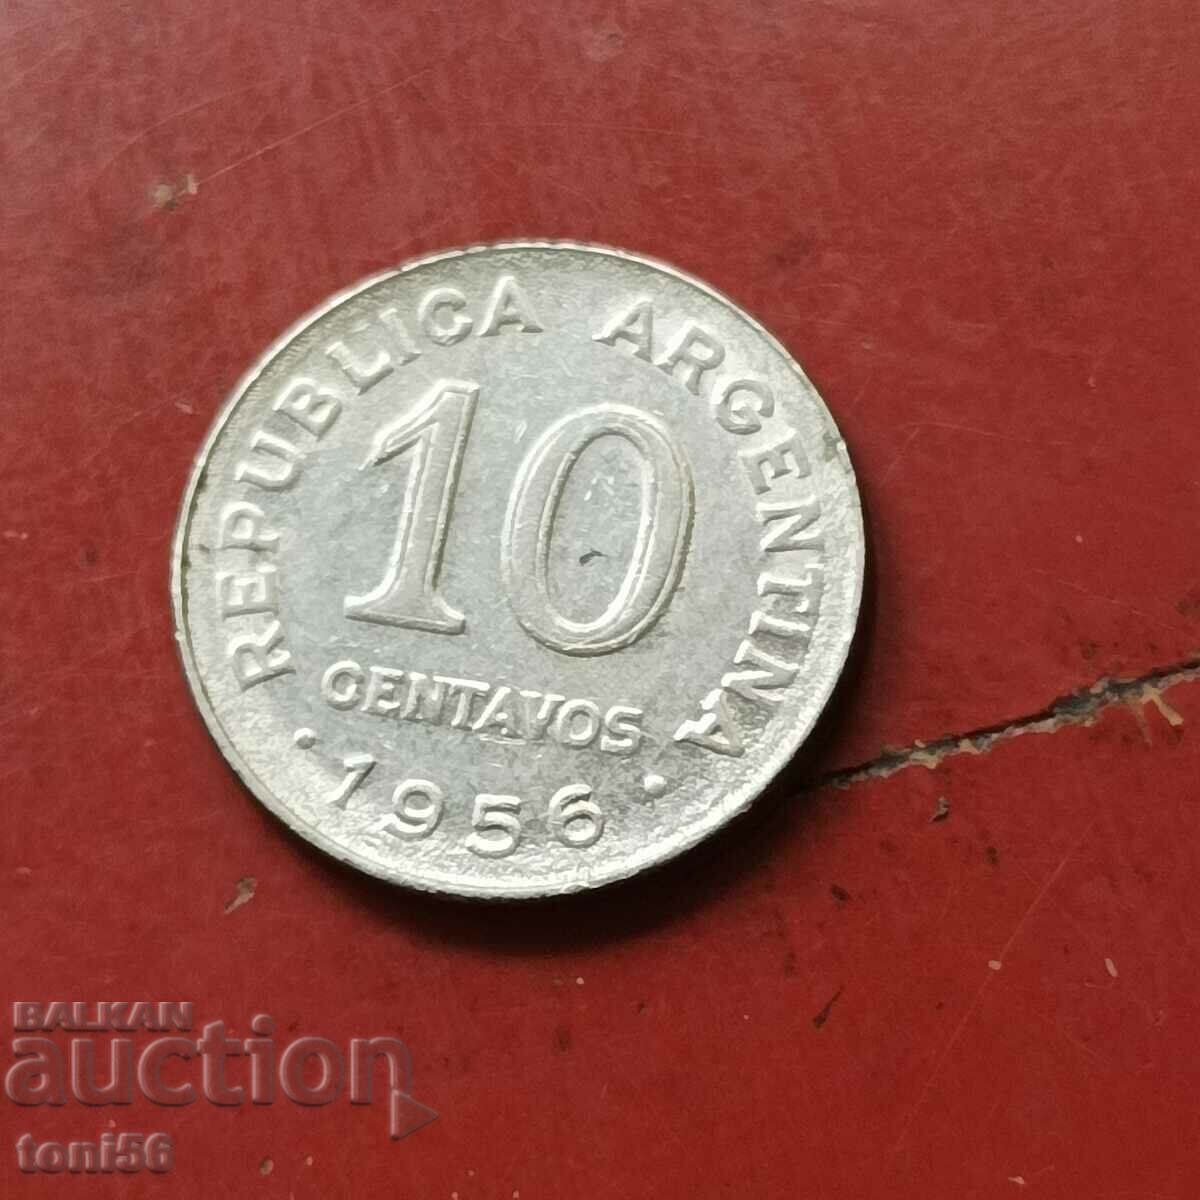 Argentina 10 centavos 1956 - inel zimțat,